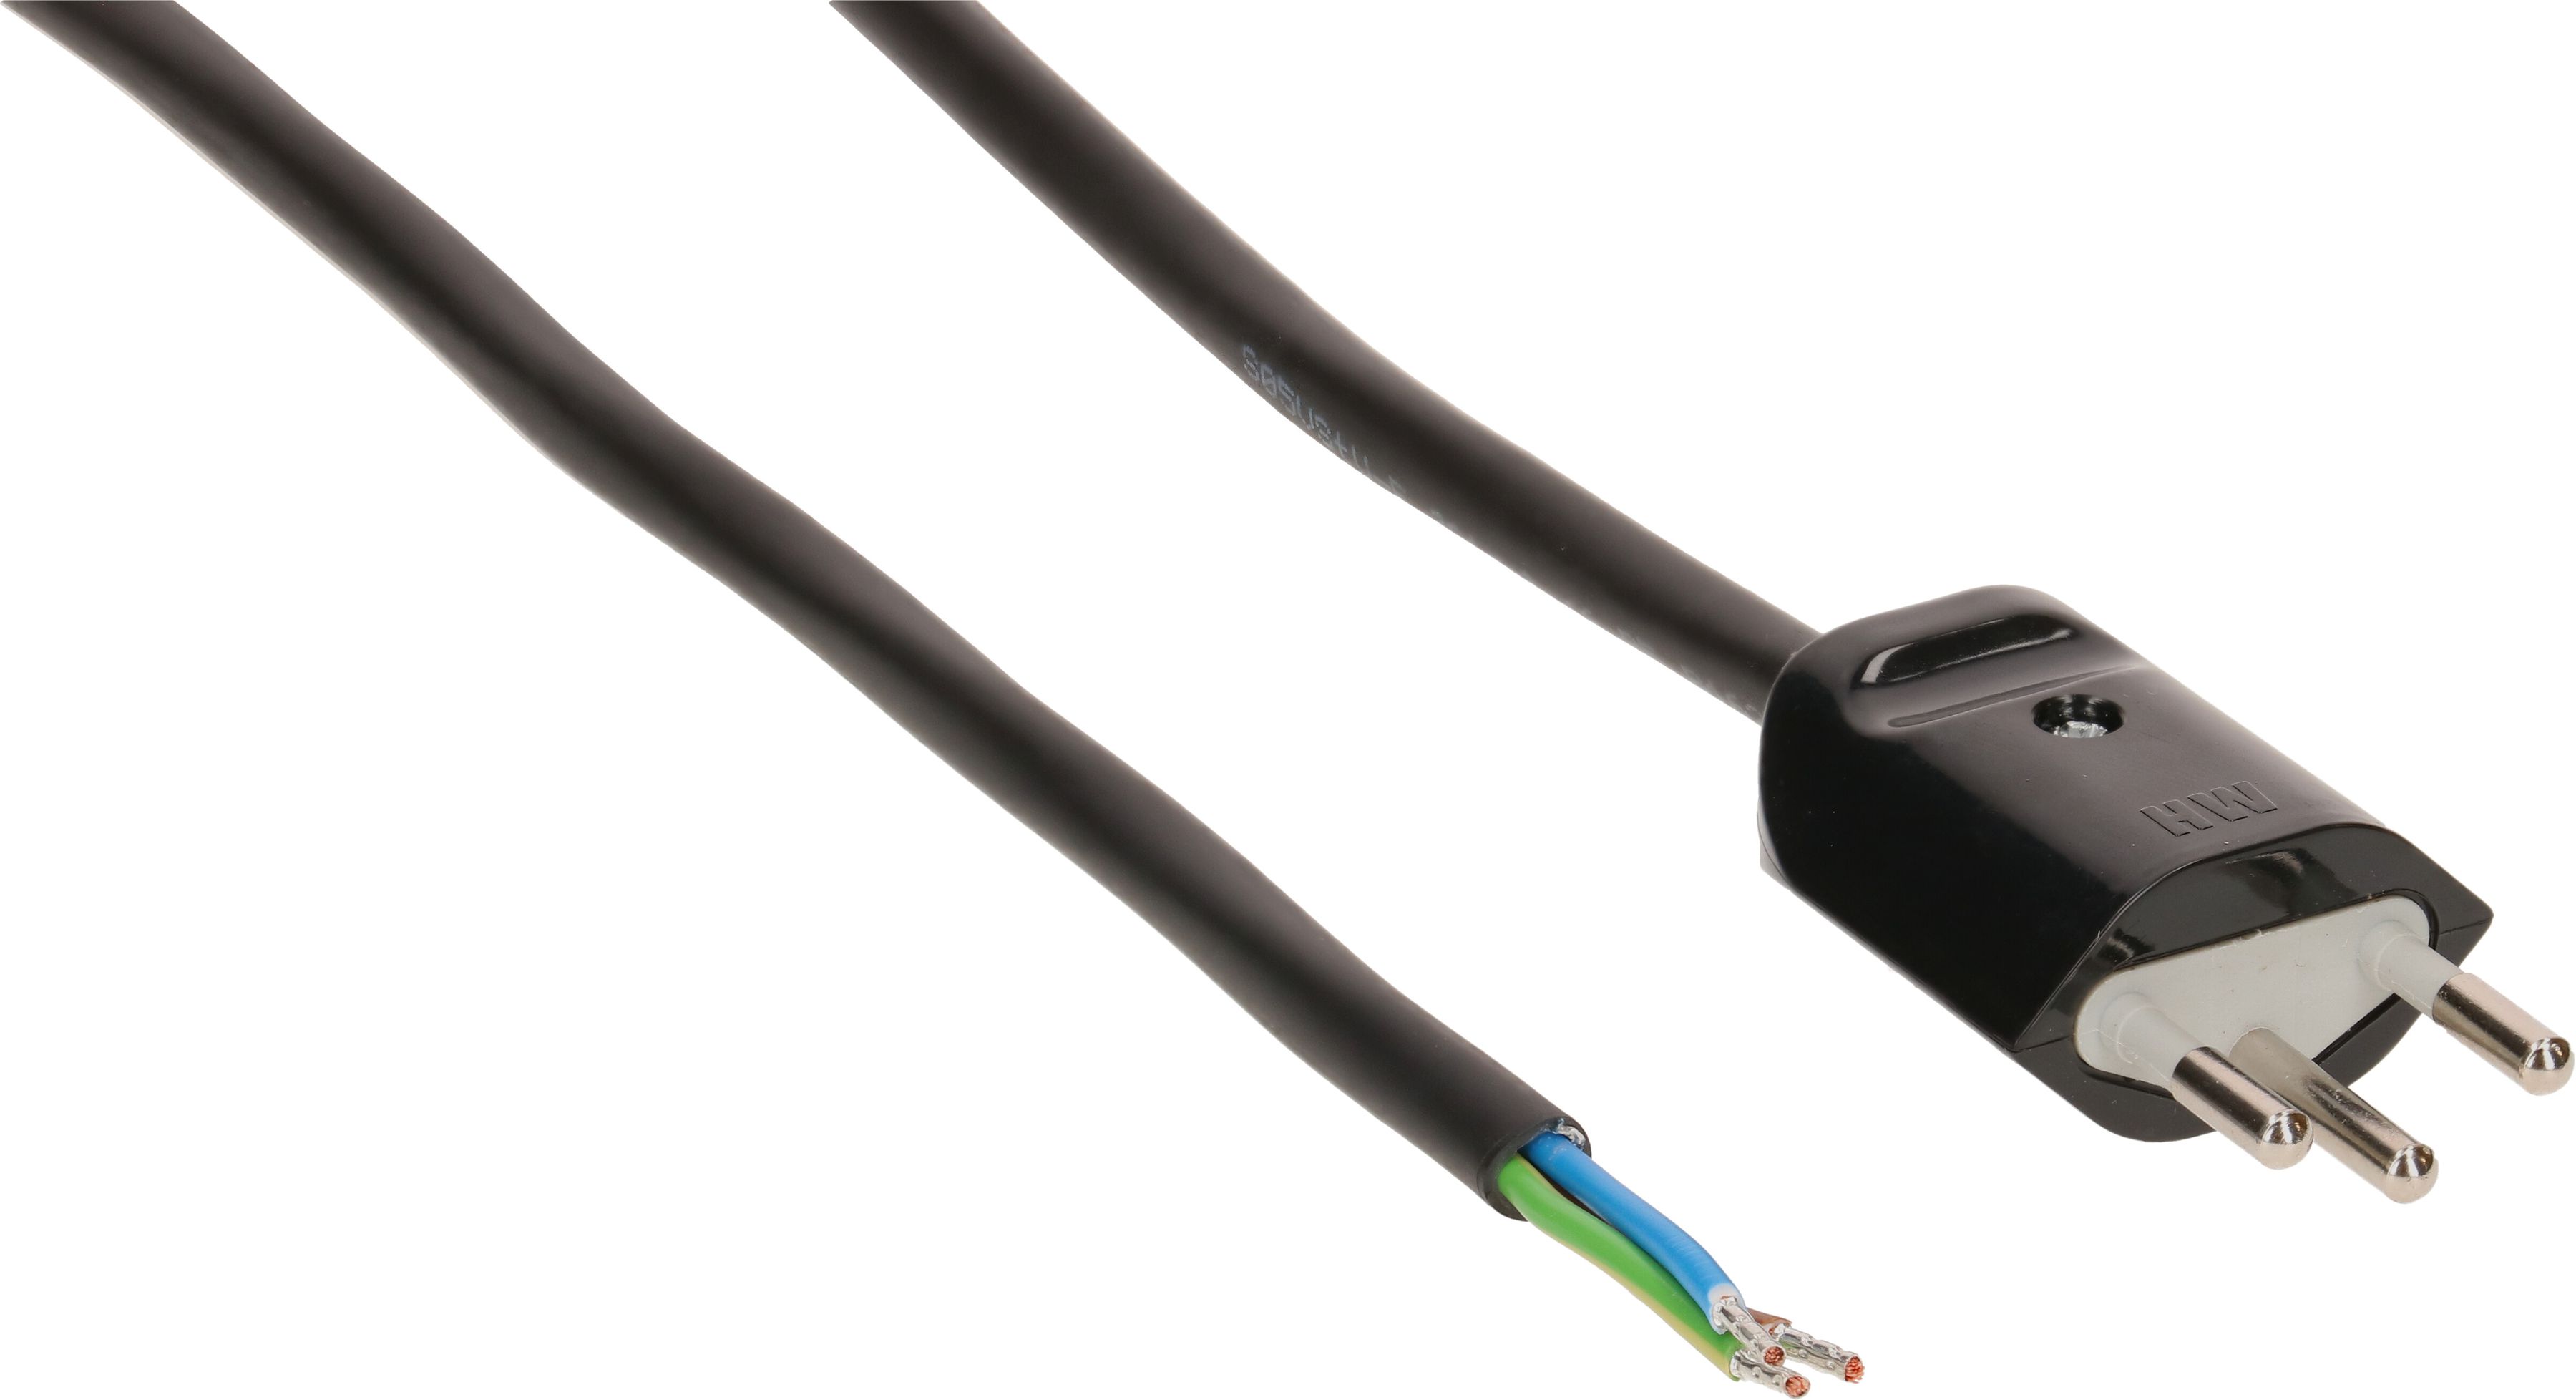 câble secteur 3G1.0 5m noir blindé avec fiche type 12